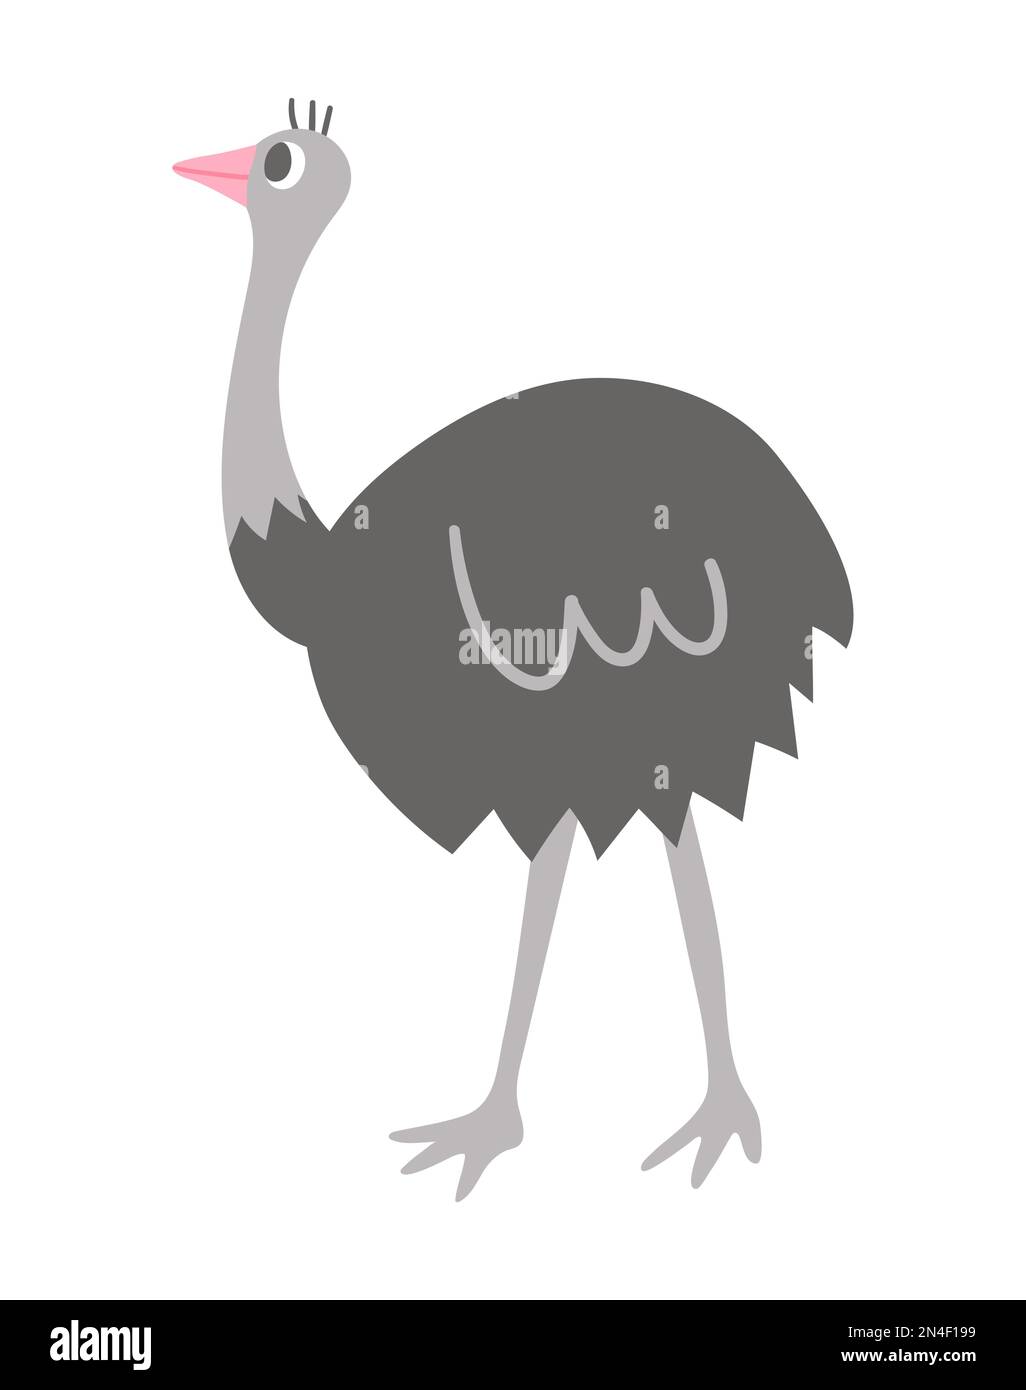 Vektor Straußsymbol isoliert auf weißem Hintergrund. Süße afrikanische Vogel-Illustration für Kinder Stock Vektor